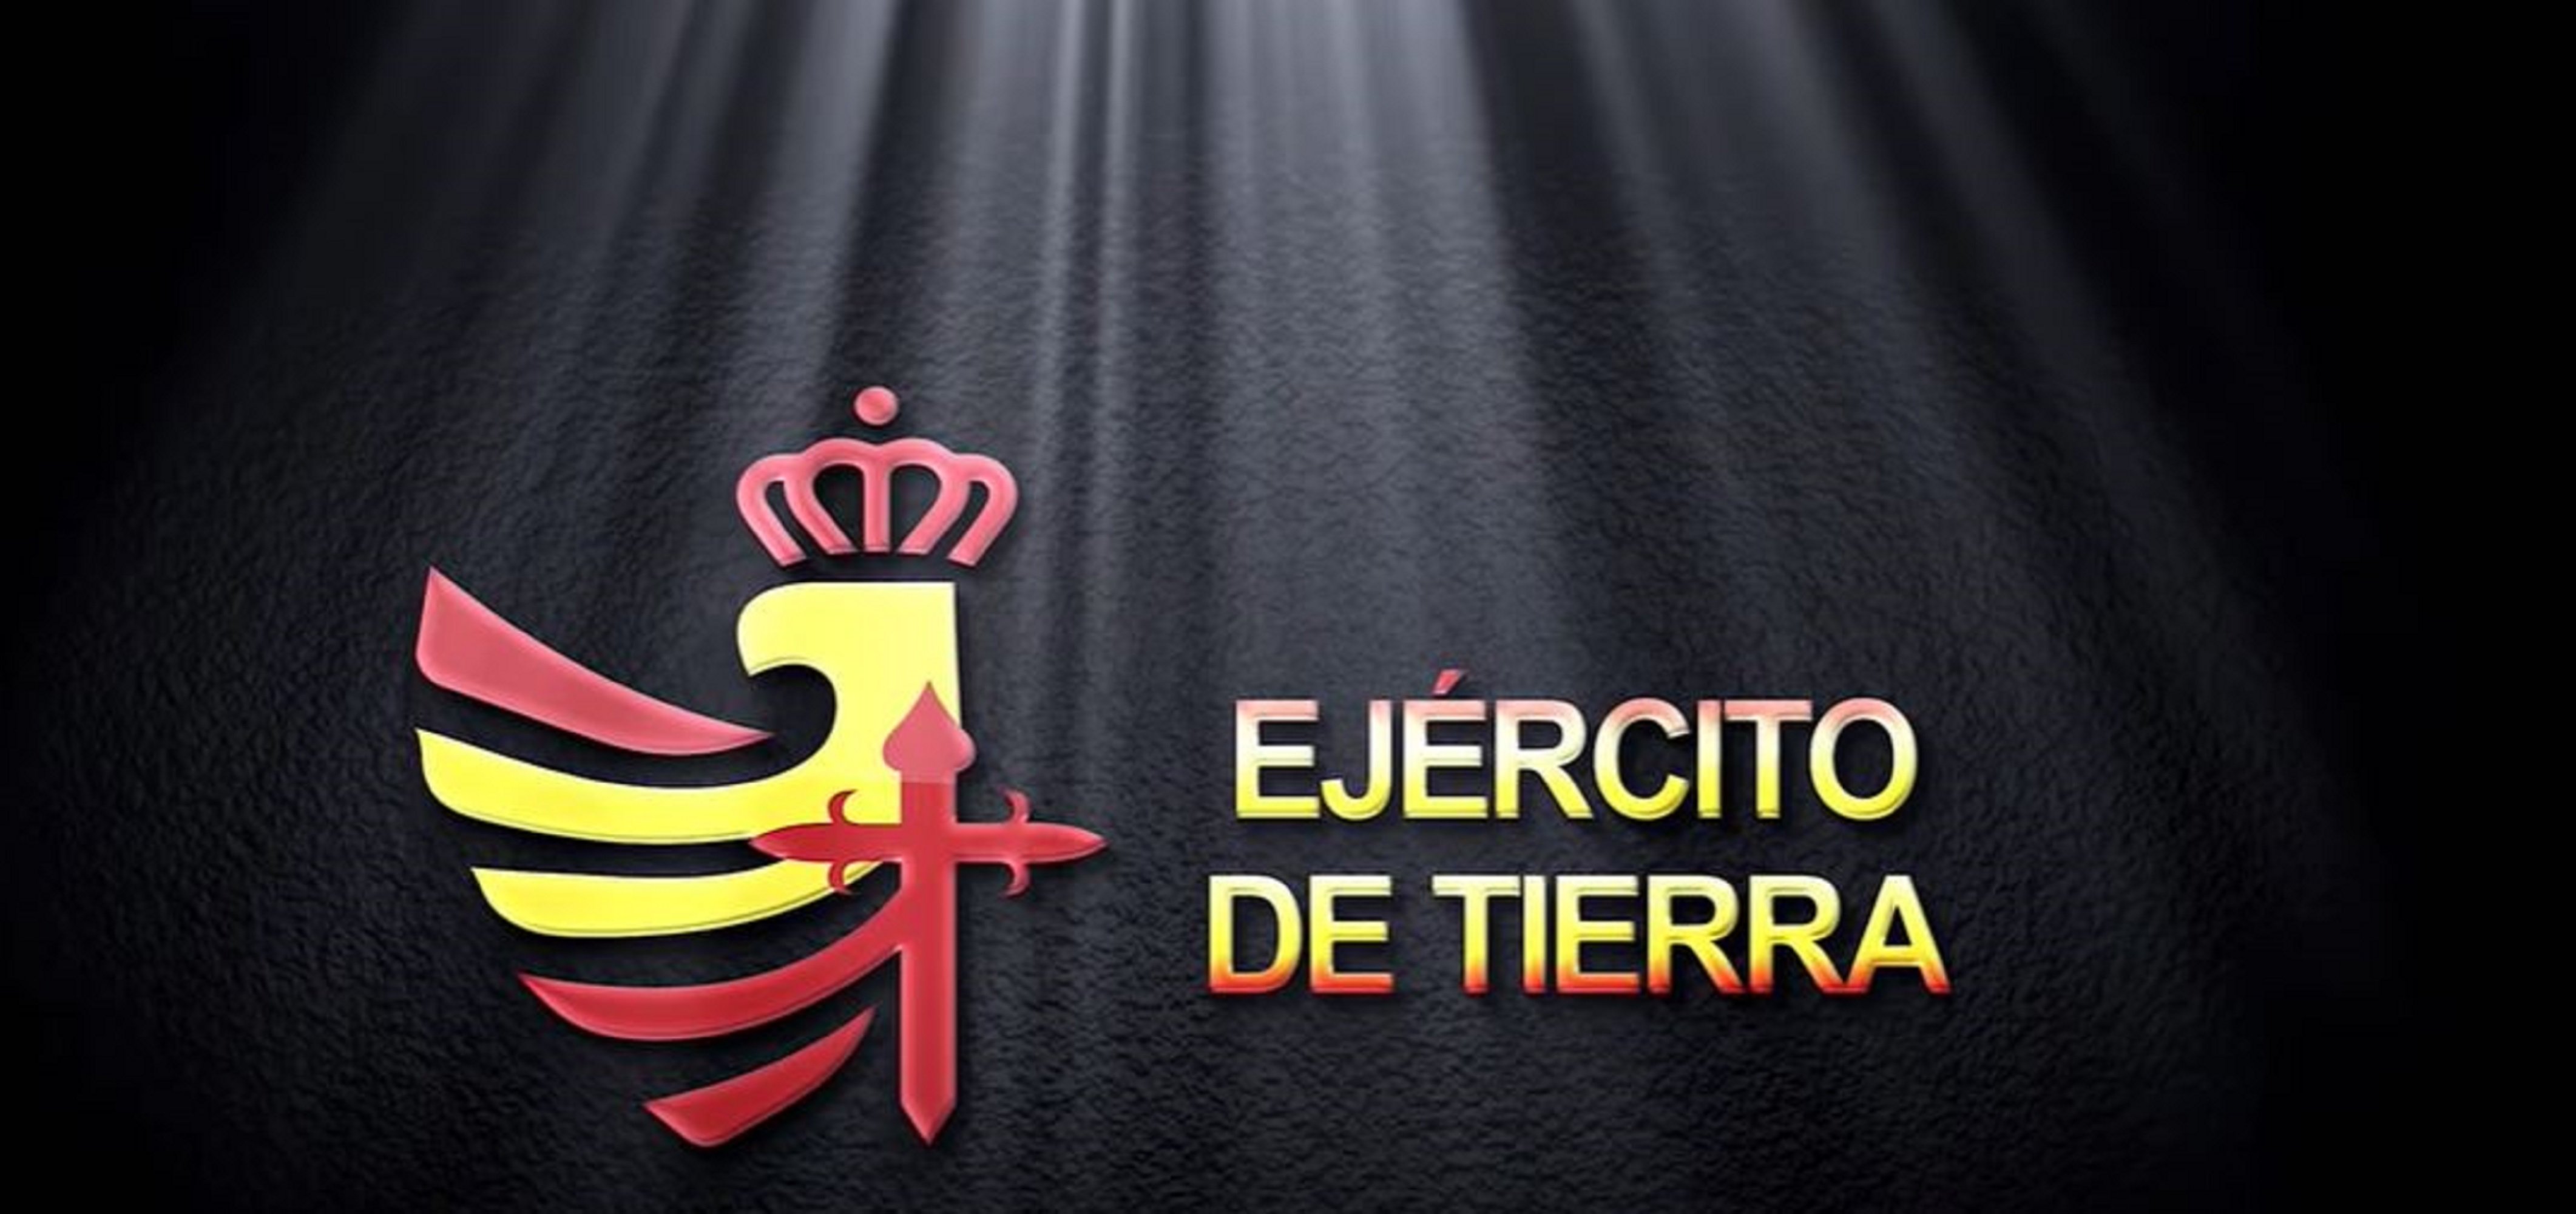 El Ejército españoliza sus logos